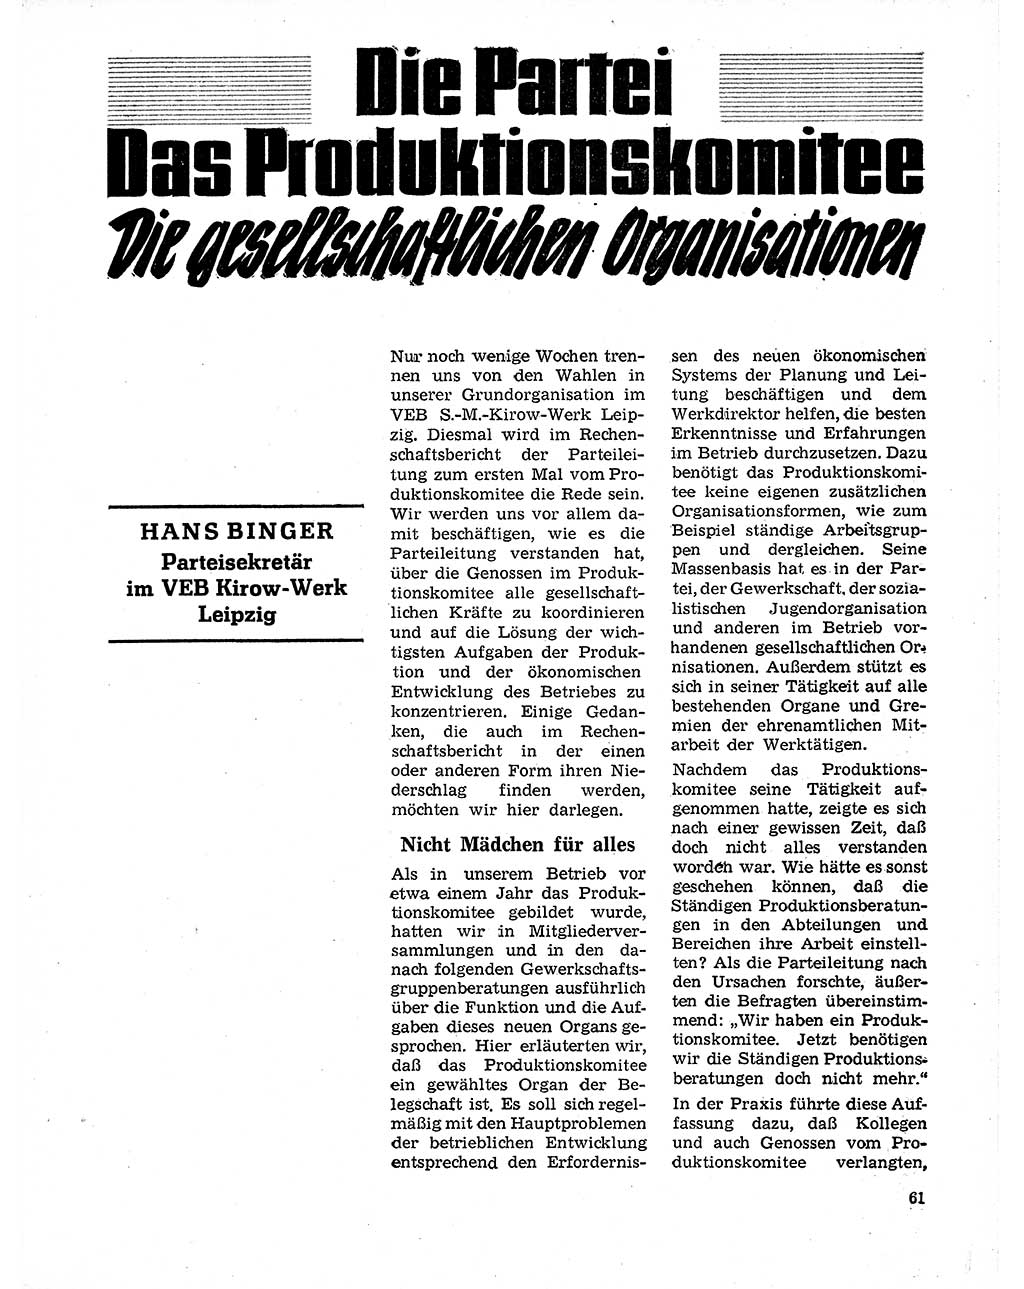 Neuer Weg (NW), Organ des Zentralkomitees (ZK) der SED (Sozialistische Einheitspartei Deutschlands) für Fragen des Parteilebens, 20. Jahrgang [Deutsche Demokratische Republik (DDR)] 1965, Seite 61 (NW ZK SED DDR 1965, S. 61)